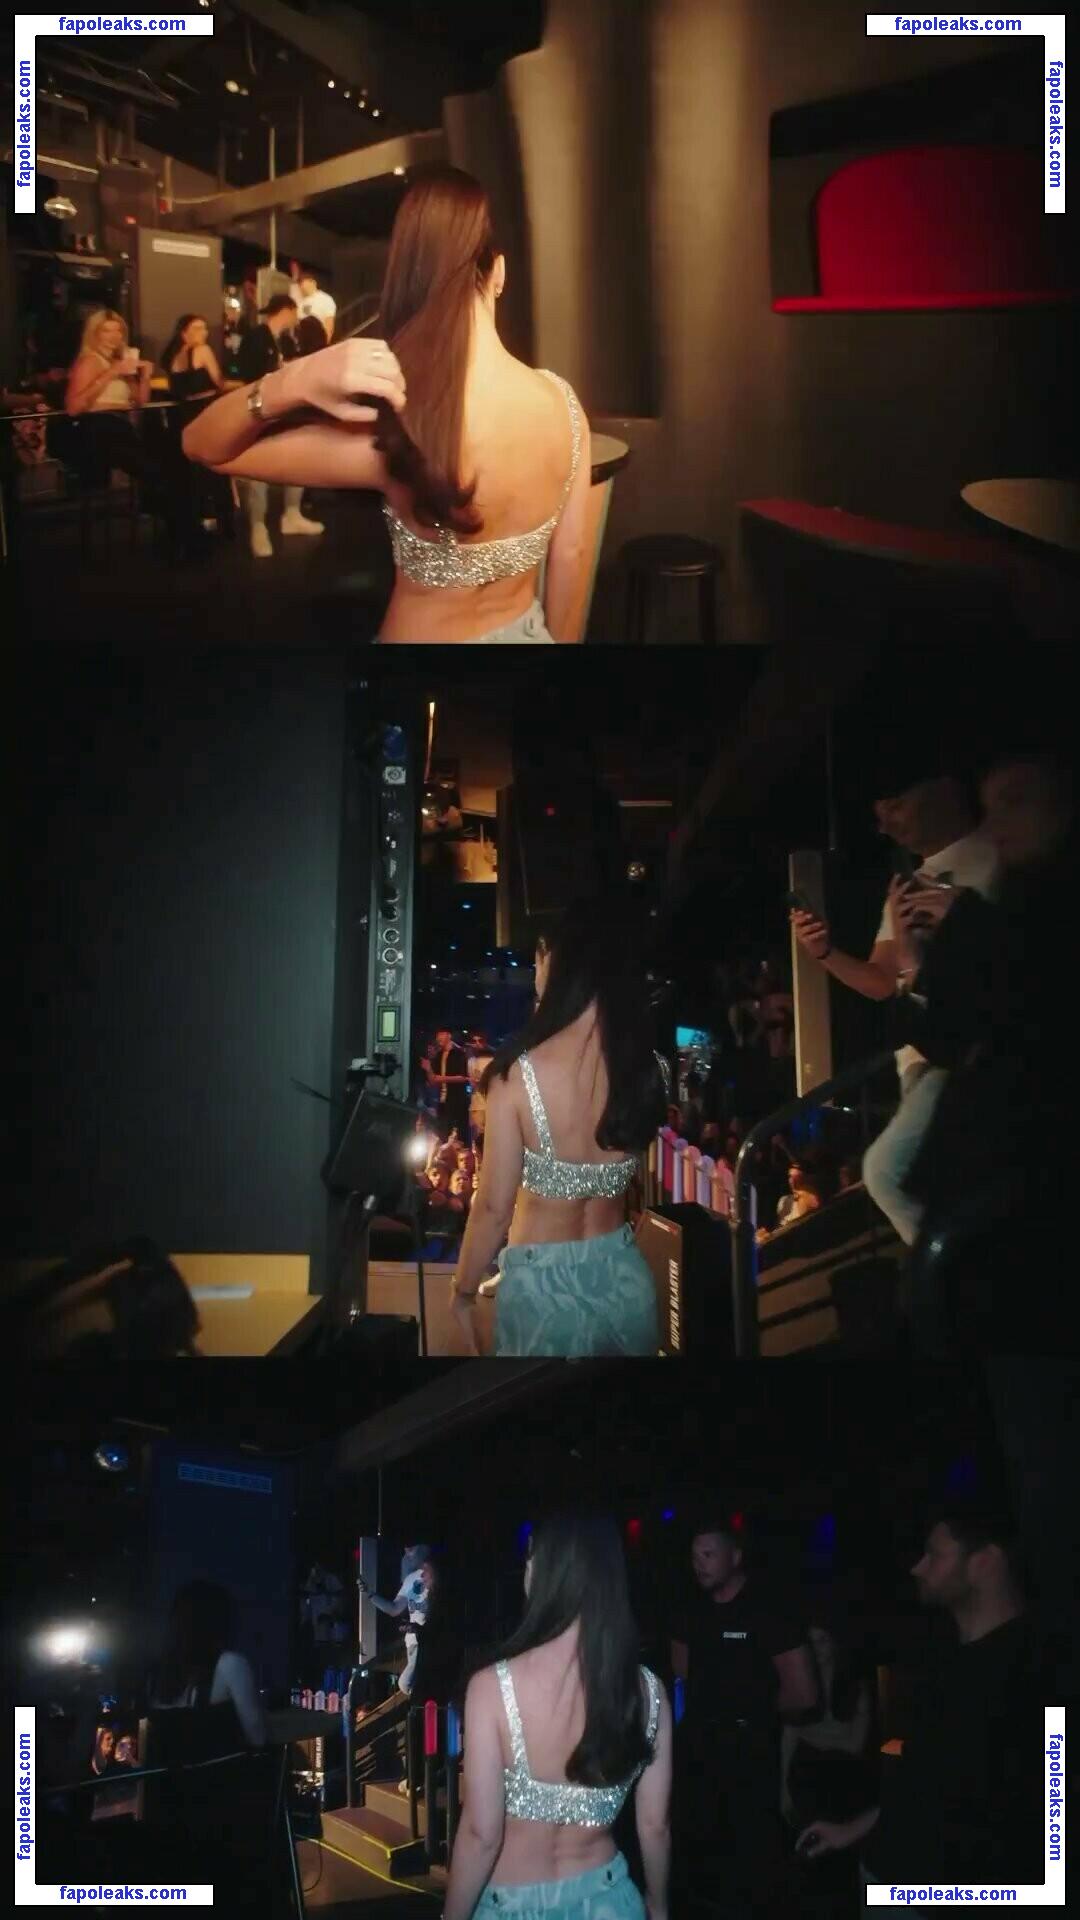 Lena Meyer-Landrut / lenameyerlandrut nude photo #1176 from OnlyFans